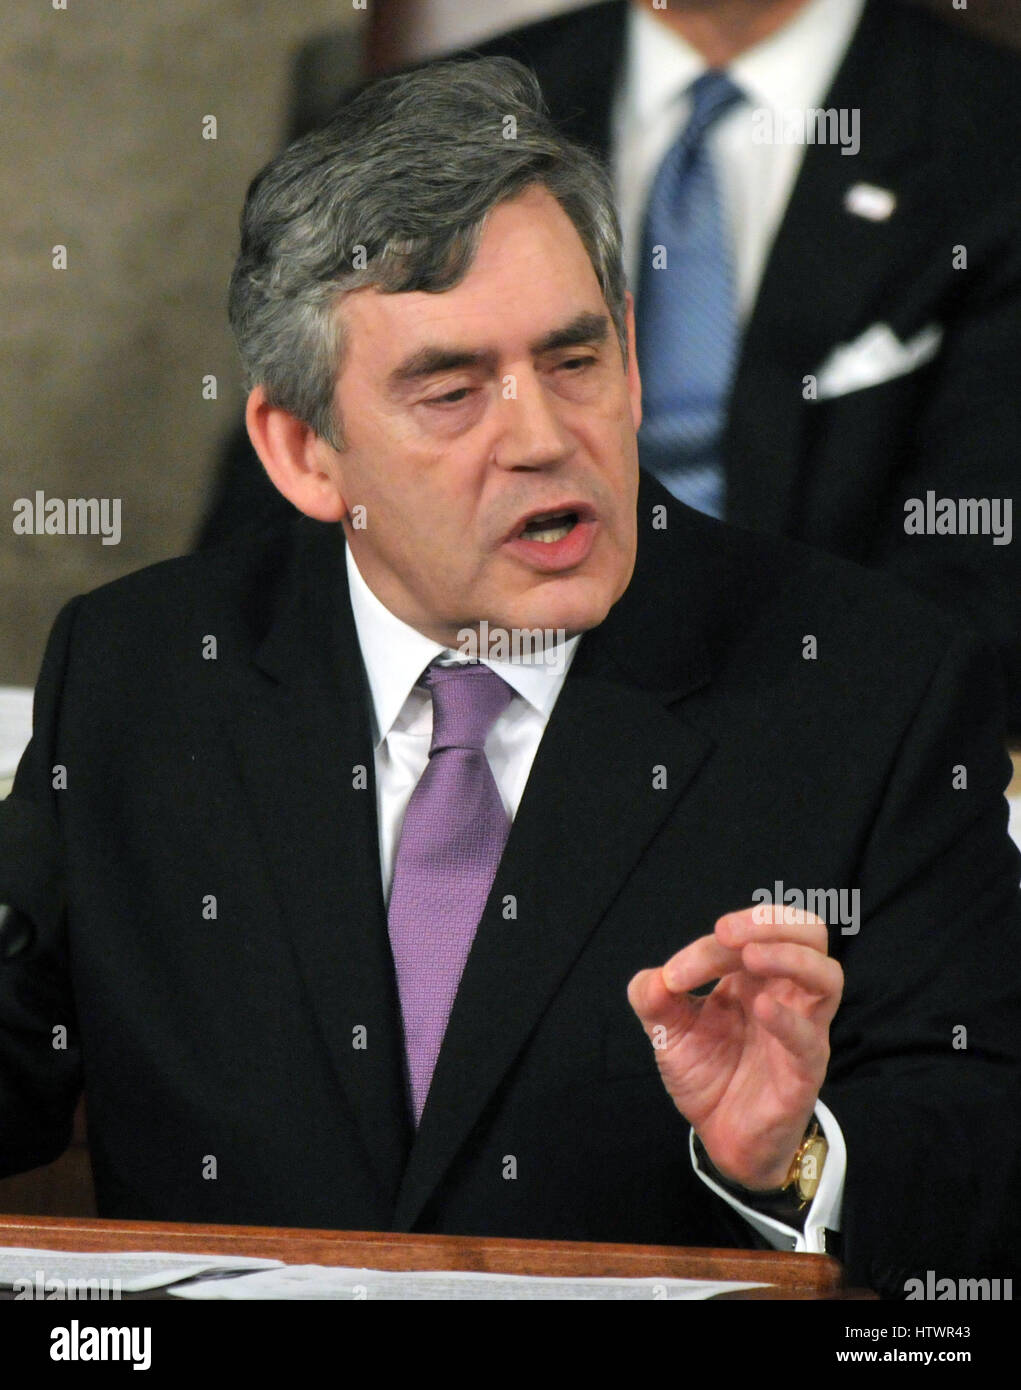 Washington, DC - Marzo 4, 2009 -- il diritto onorevole Gordon Brown, P.F., Primo Ministro del Regno Unito, risolve una sessione congiunta del Congresso degli Stati Uniti negli Stati Uniti Campidoglio in Washington, D.C. mercoledì 4 marzo, 2009 Foto Stock